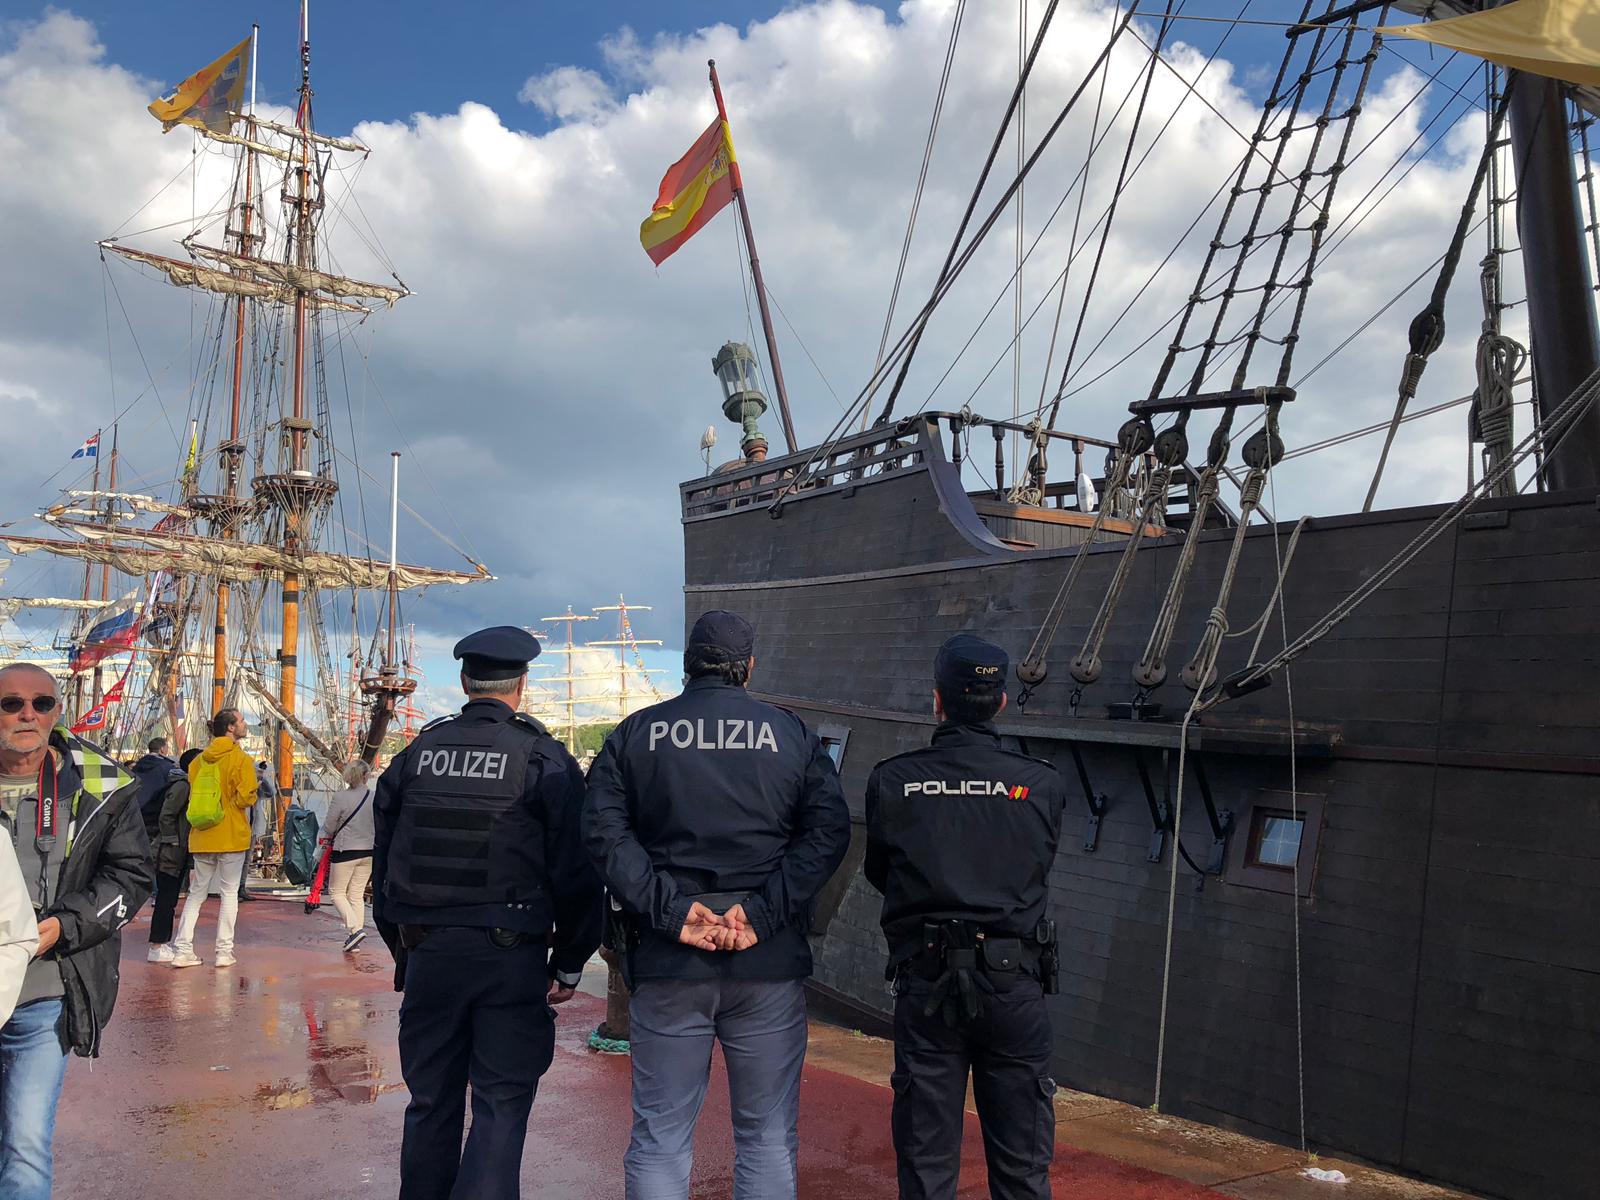 Policía Nacional con agentes de otros países uniformados frente a barca con bandera española.